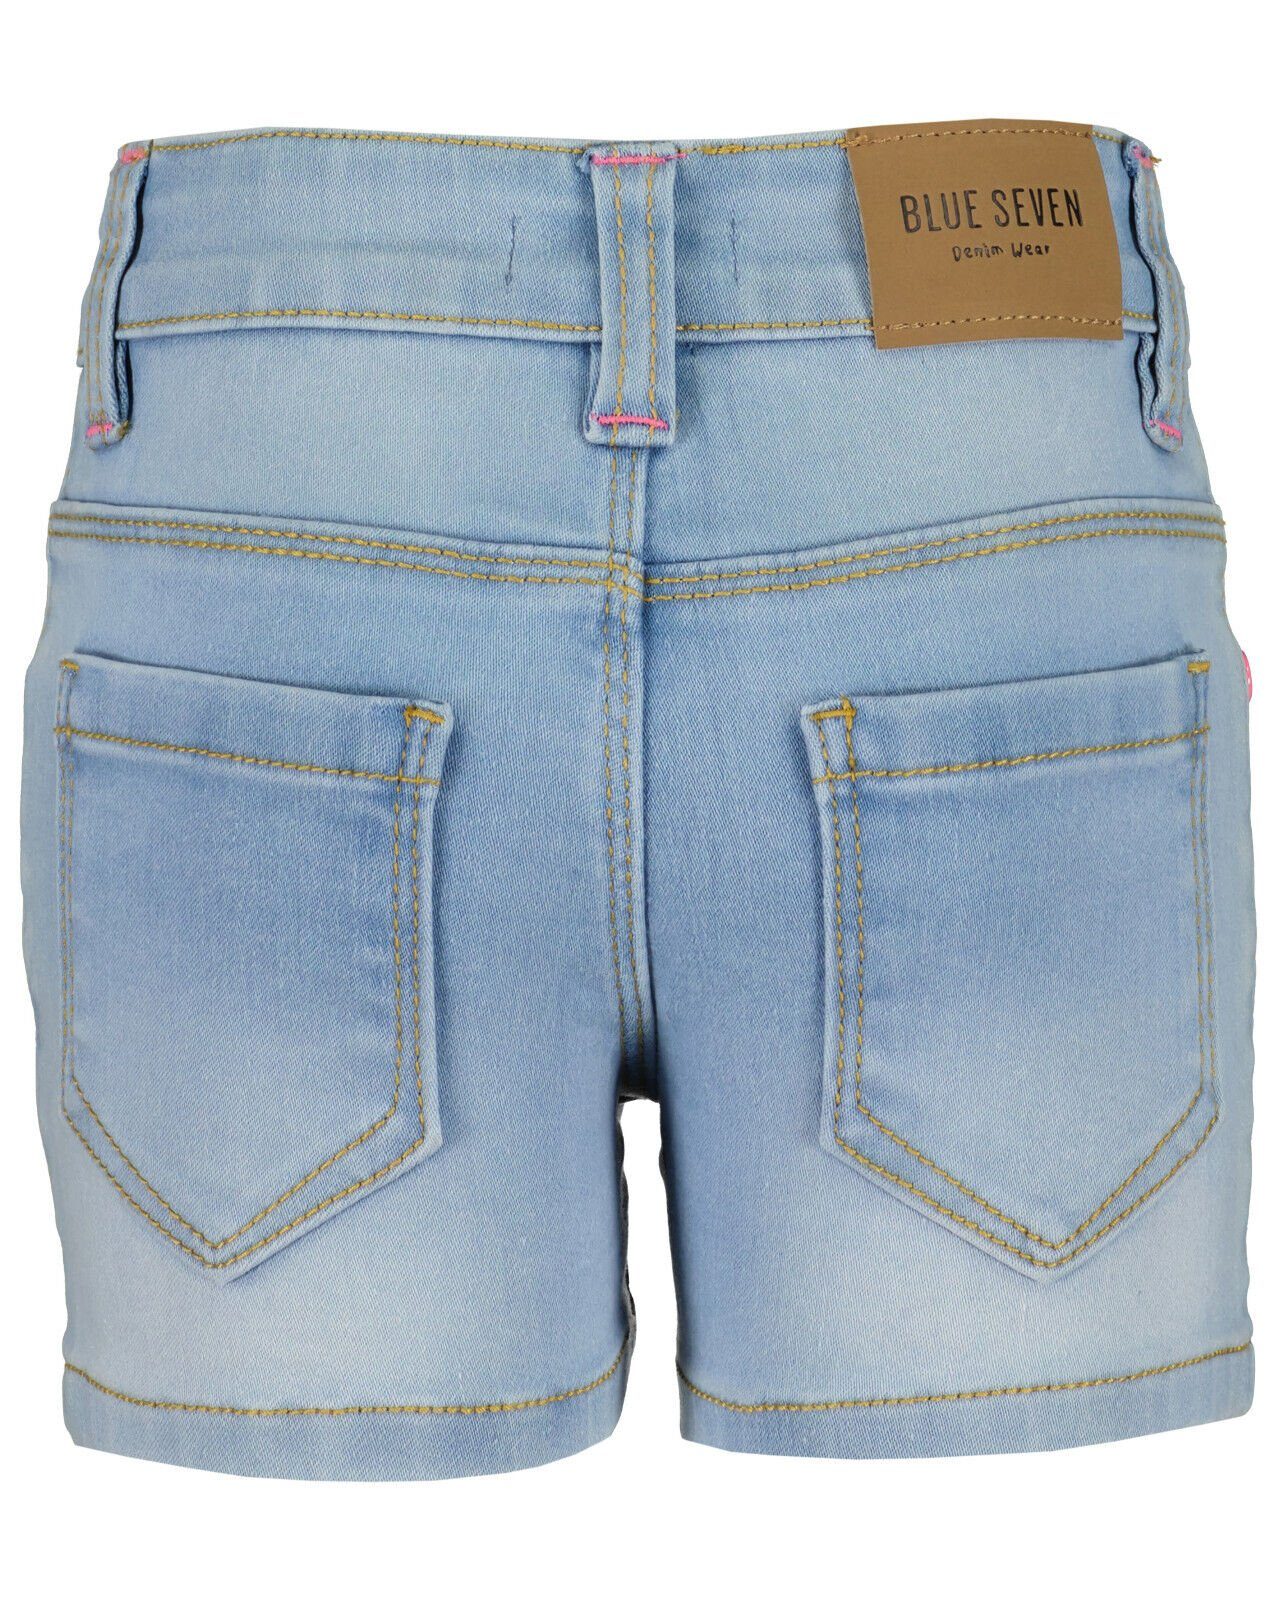 Seven® Blue Shorts Jeans Mädchen Shorts Pailletten Seven Blue